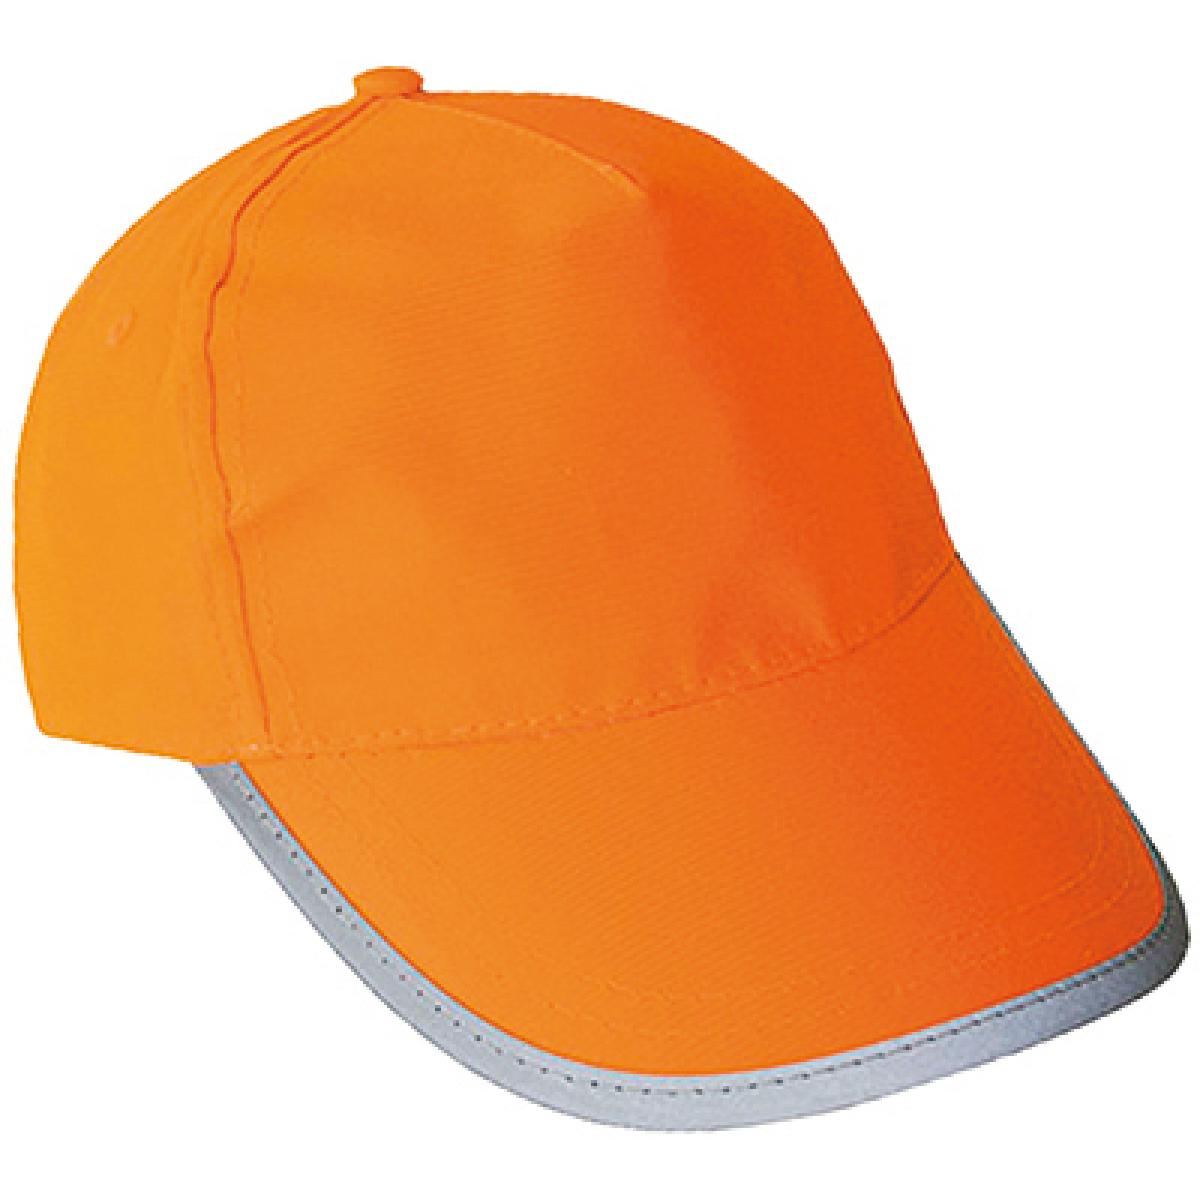 Hersteller: Korntex Herstellernummer: KXCAP Artikelbezeichnung: Hi-Viz-, Fluo-Cap / Mütze Farbe: Signal Orange